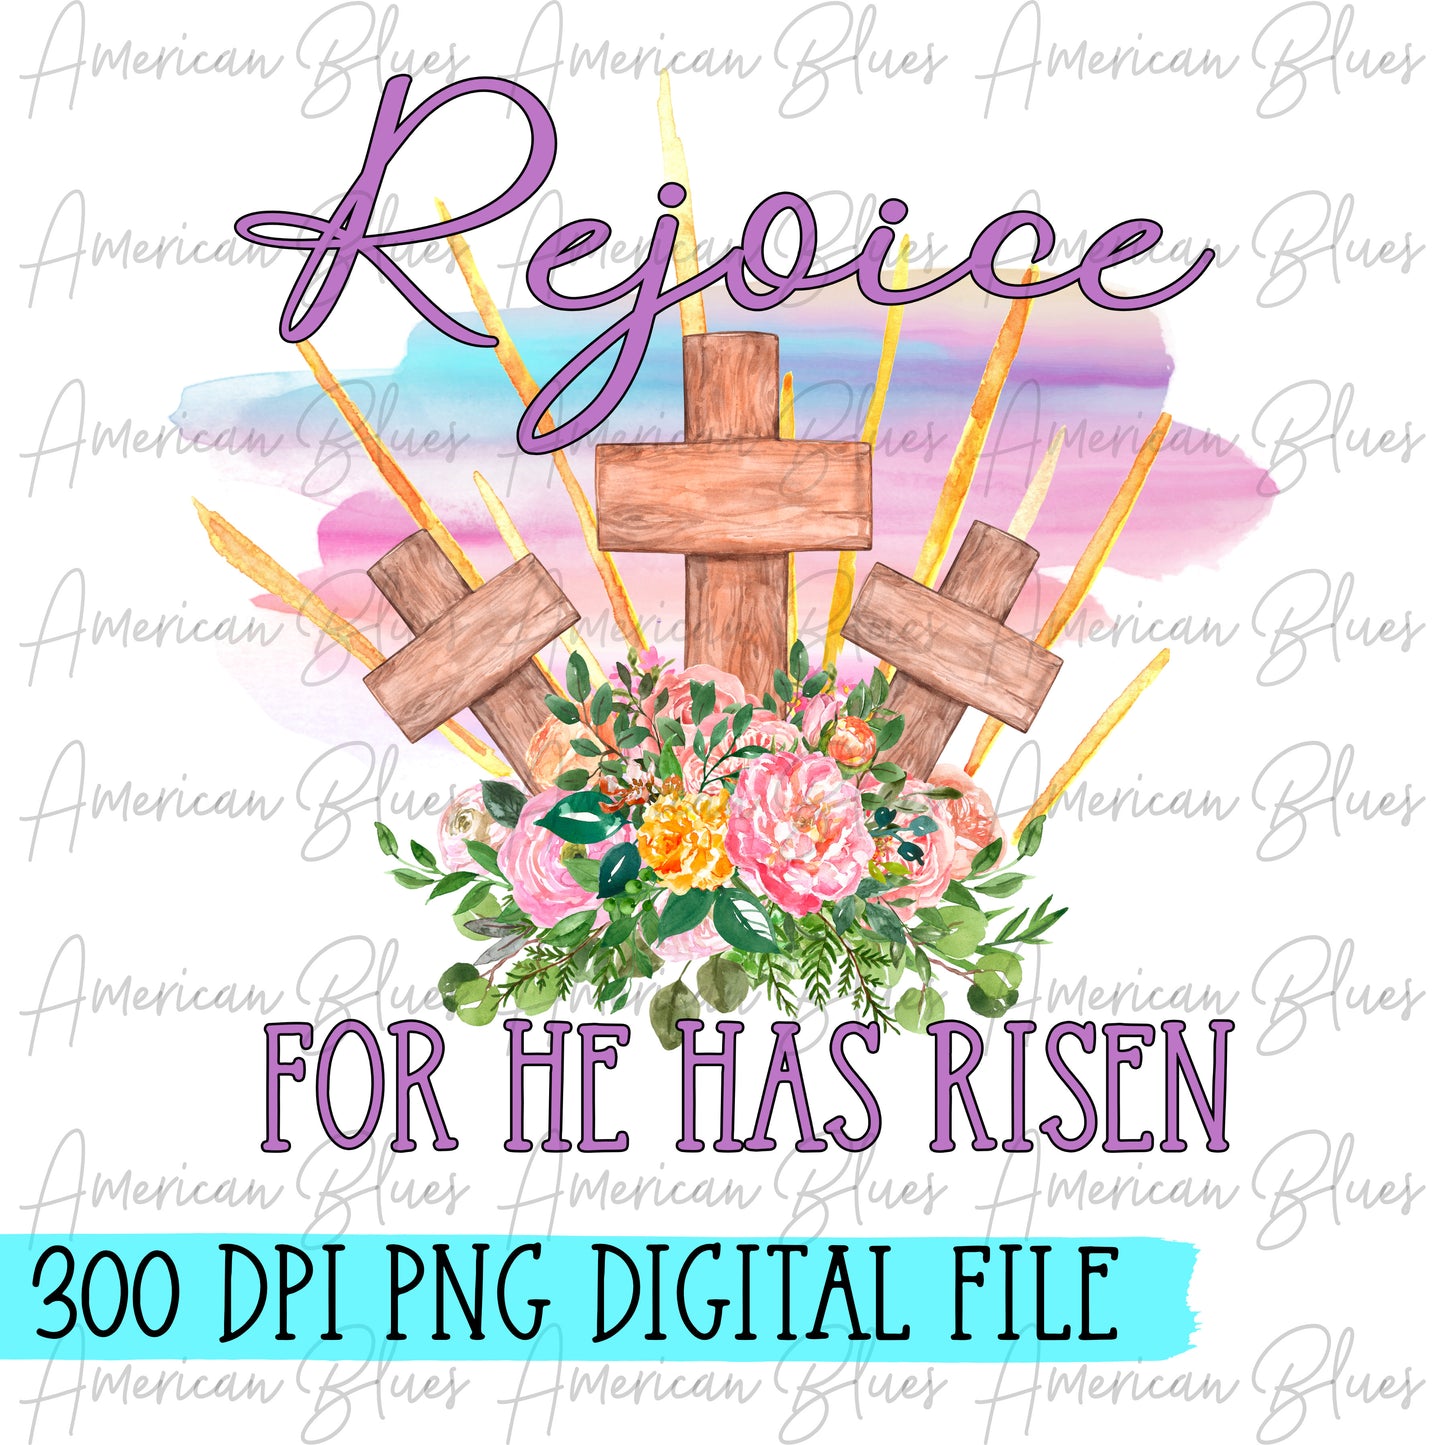 Rejoice! For he has Risen- DIGITAL